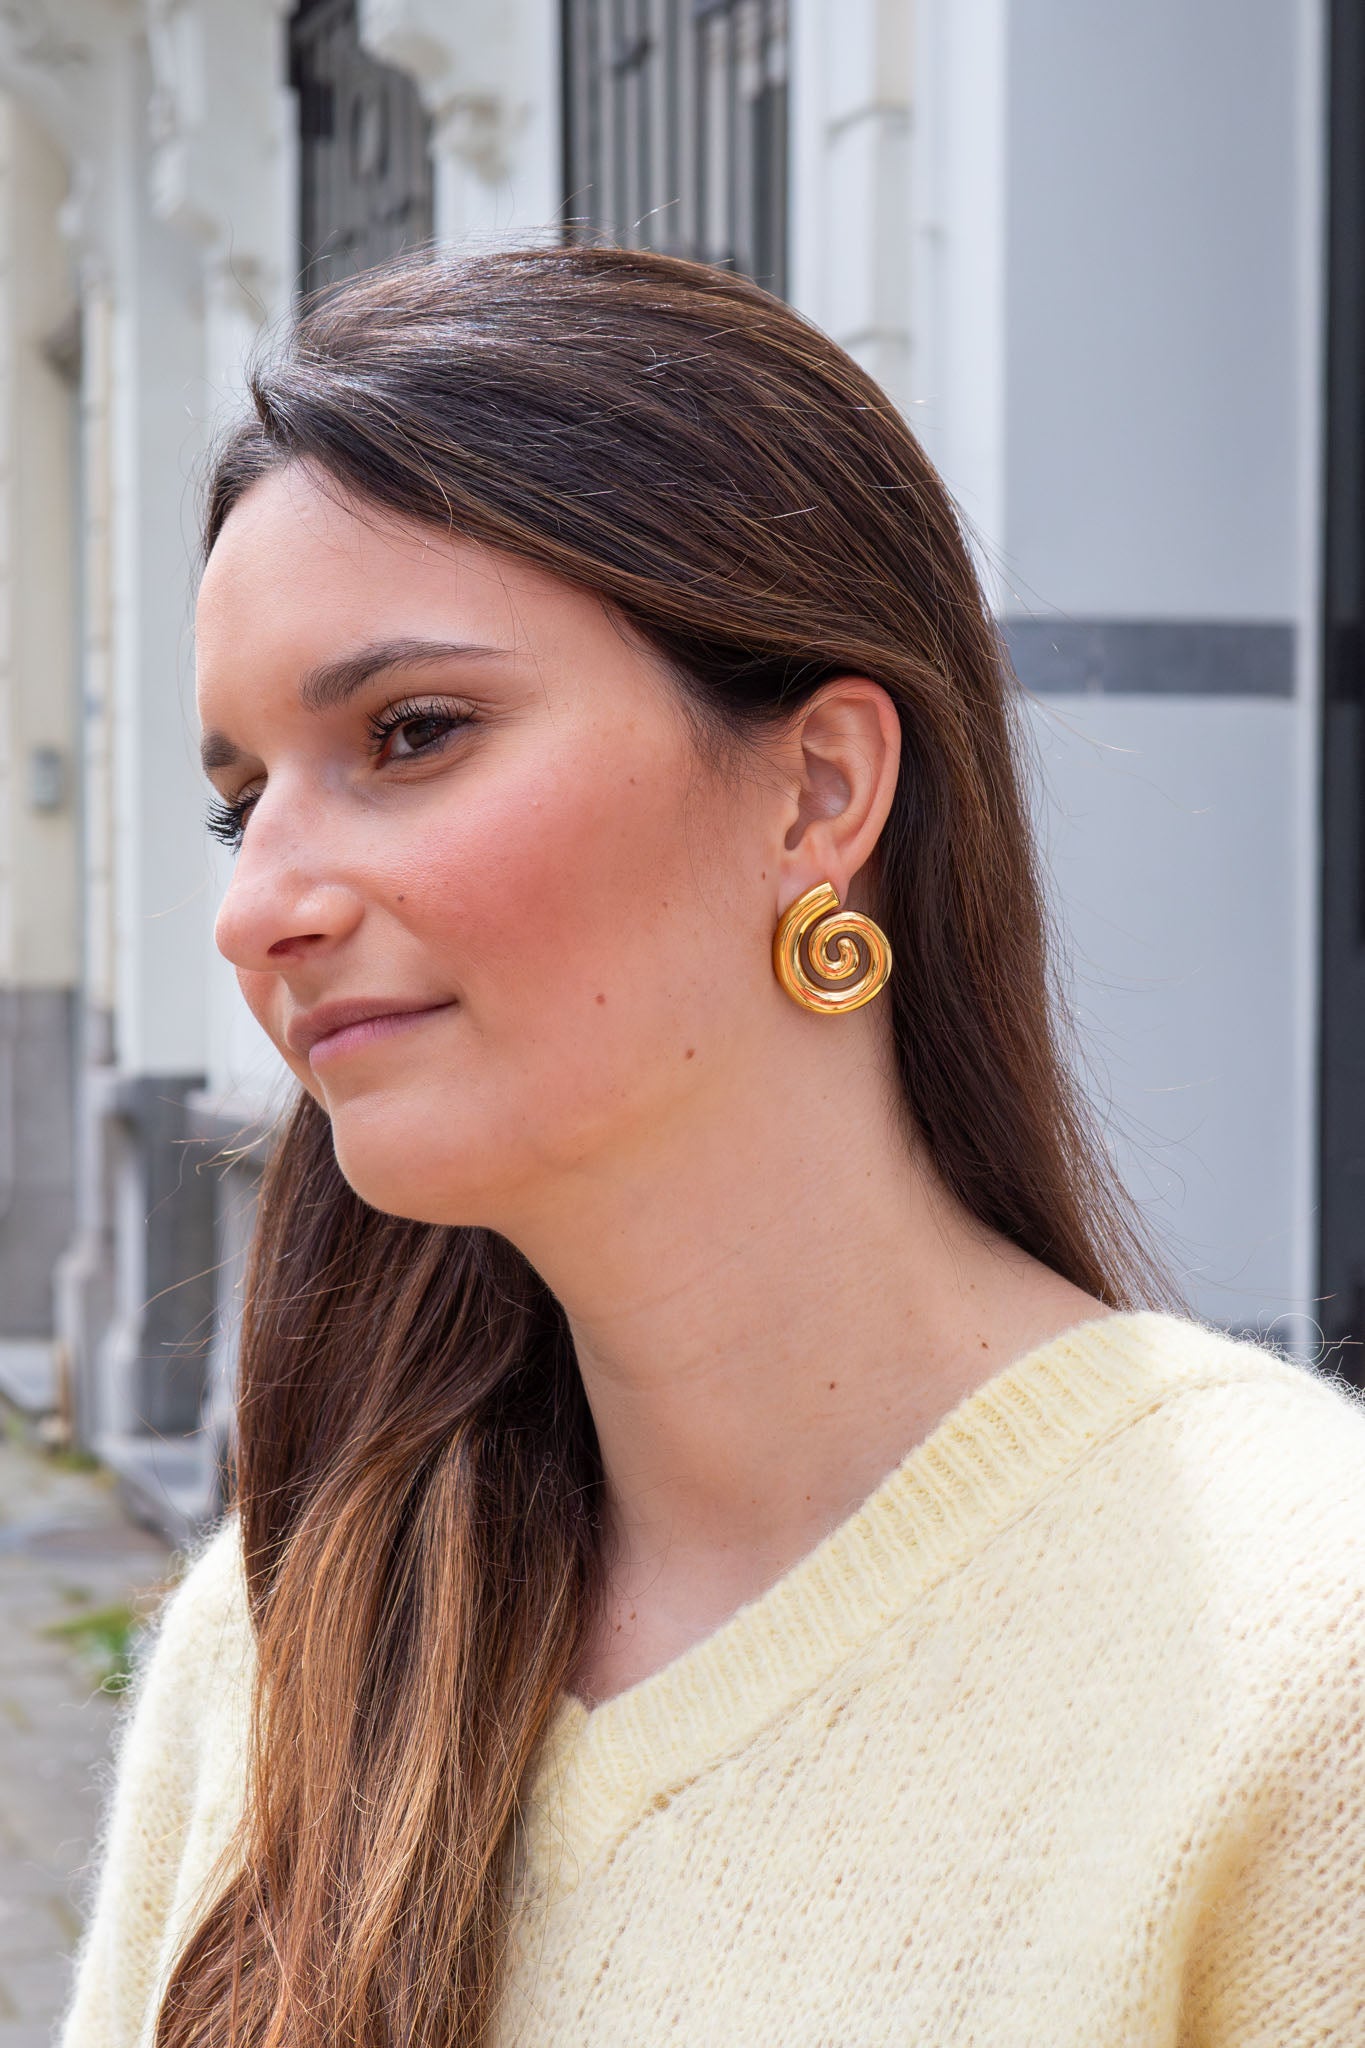 SV Spiral Earrings